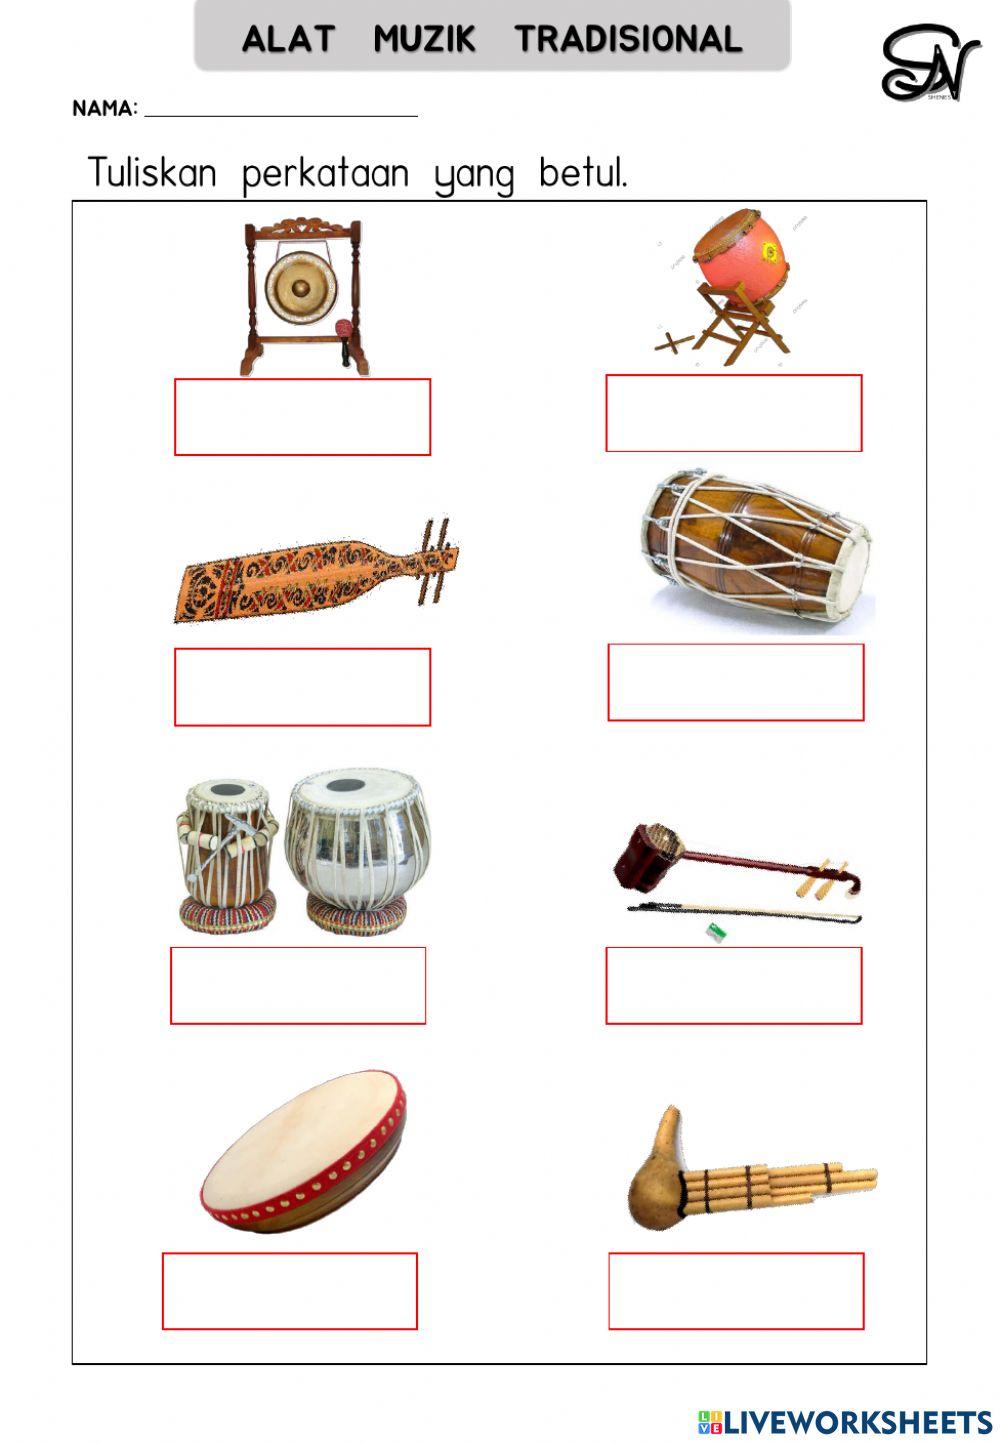 Alat muzik tradisional